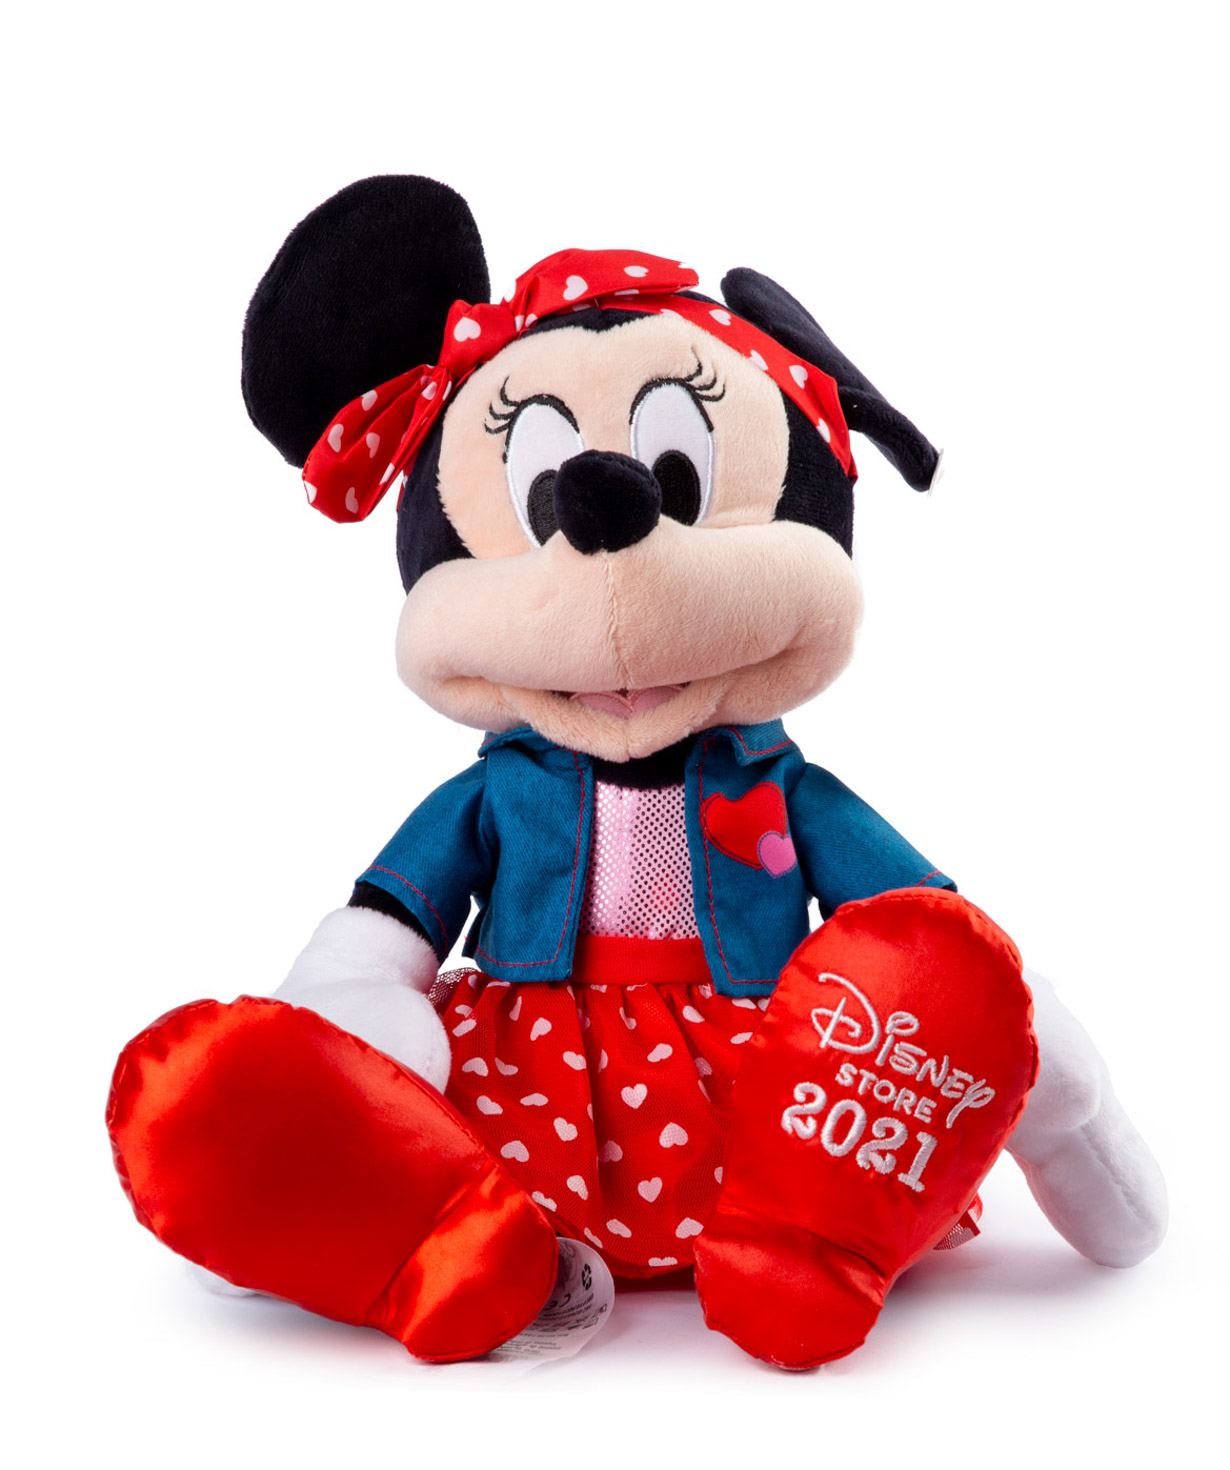 Խաղալիք Միննի Մաուս փափուկ, Disney